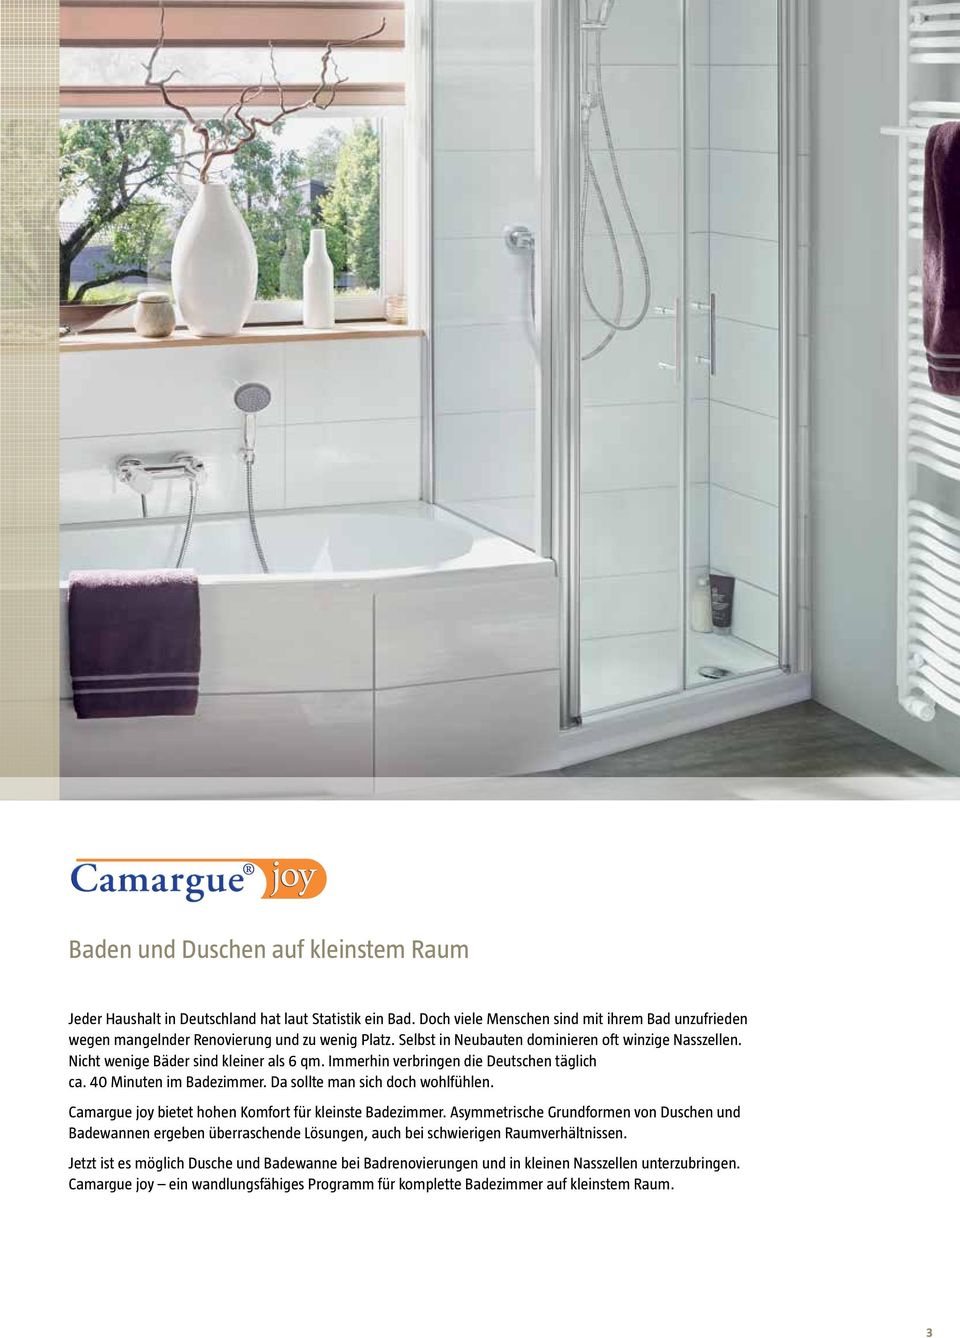 Da sollte man sich doch wohlfühlen. Camargue joy bietet hohen Komfort für kleinste Badezimmer.